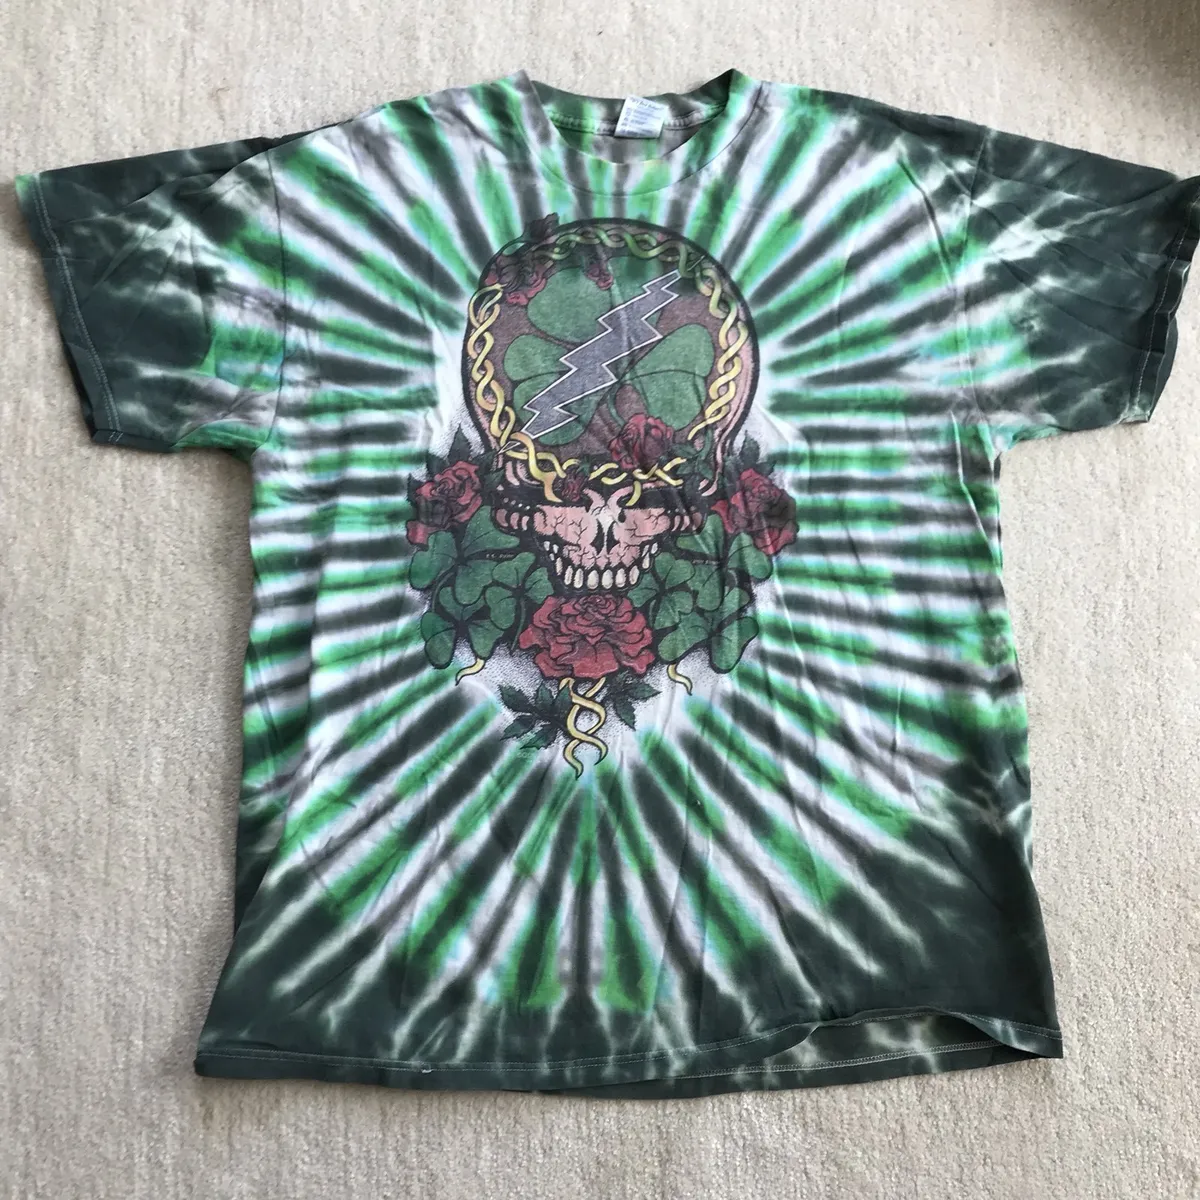 emoción Susteen Adaptación Vintage Grateful Dead Tie dye T-shirt sz XL Neon Green Black While Skull  90s 96 | eBay